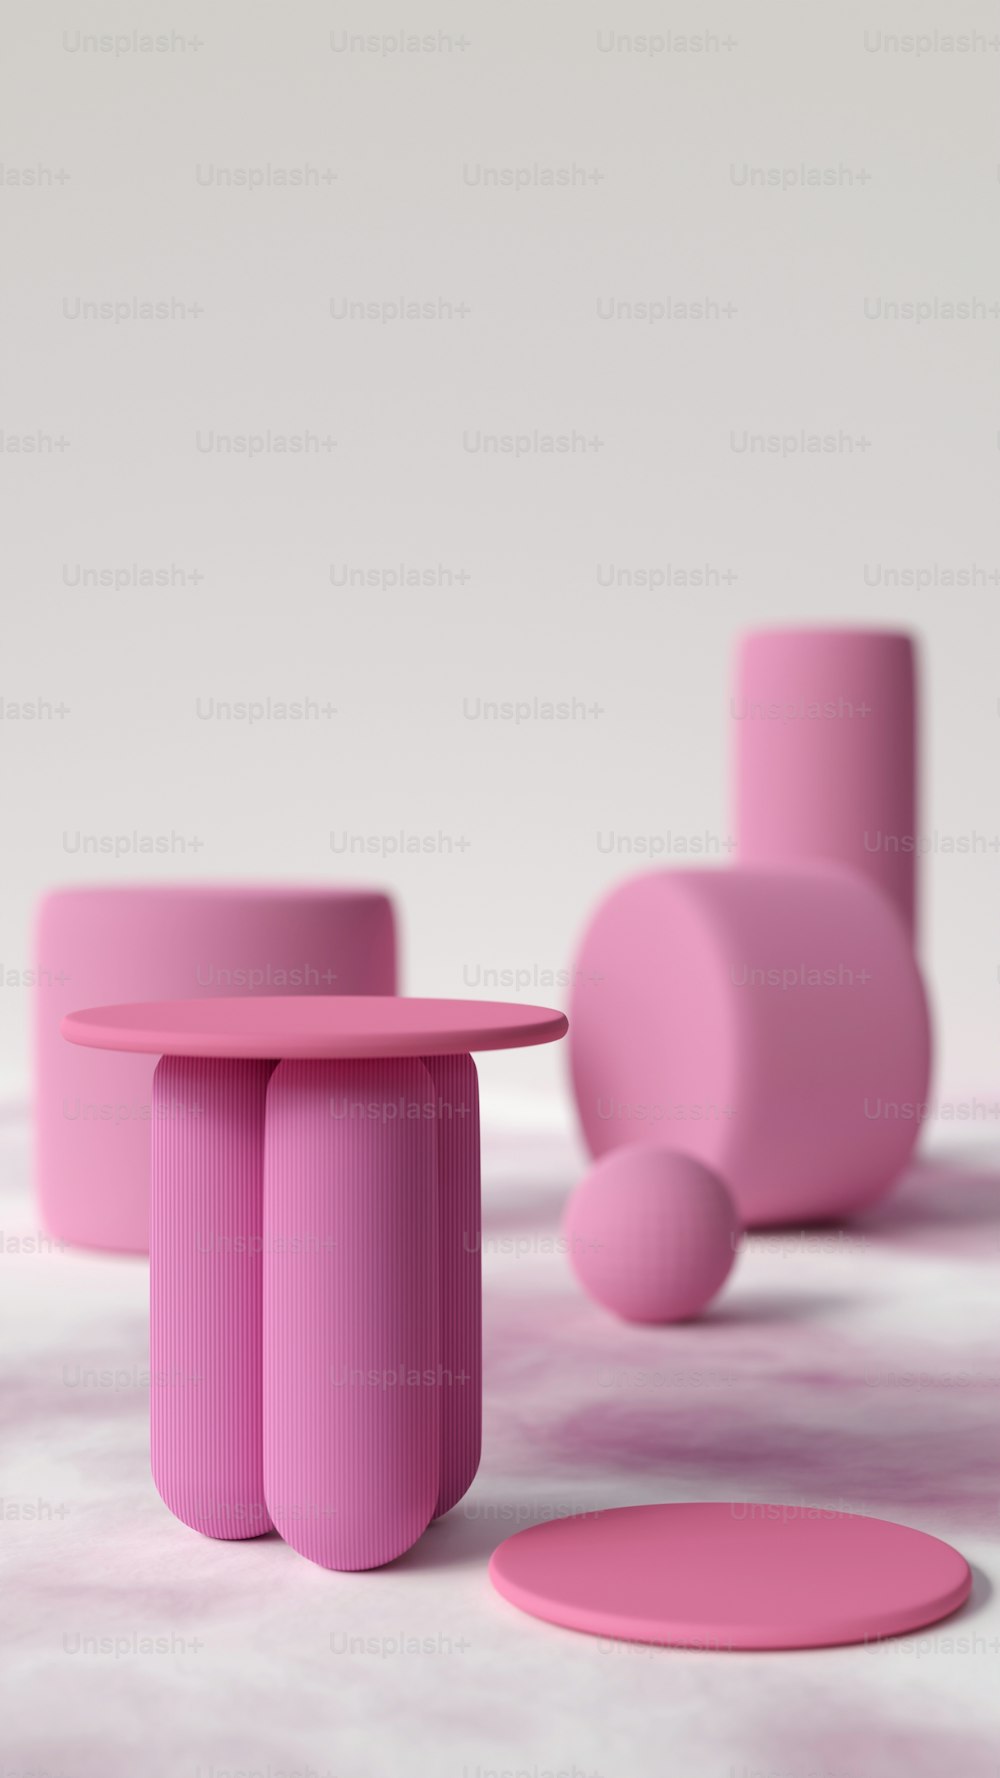 Un grupo de mesas y taburetes rosados sobre una superficie blanca